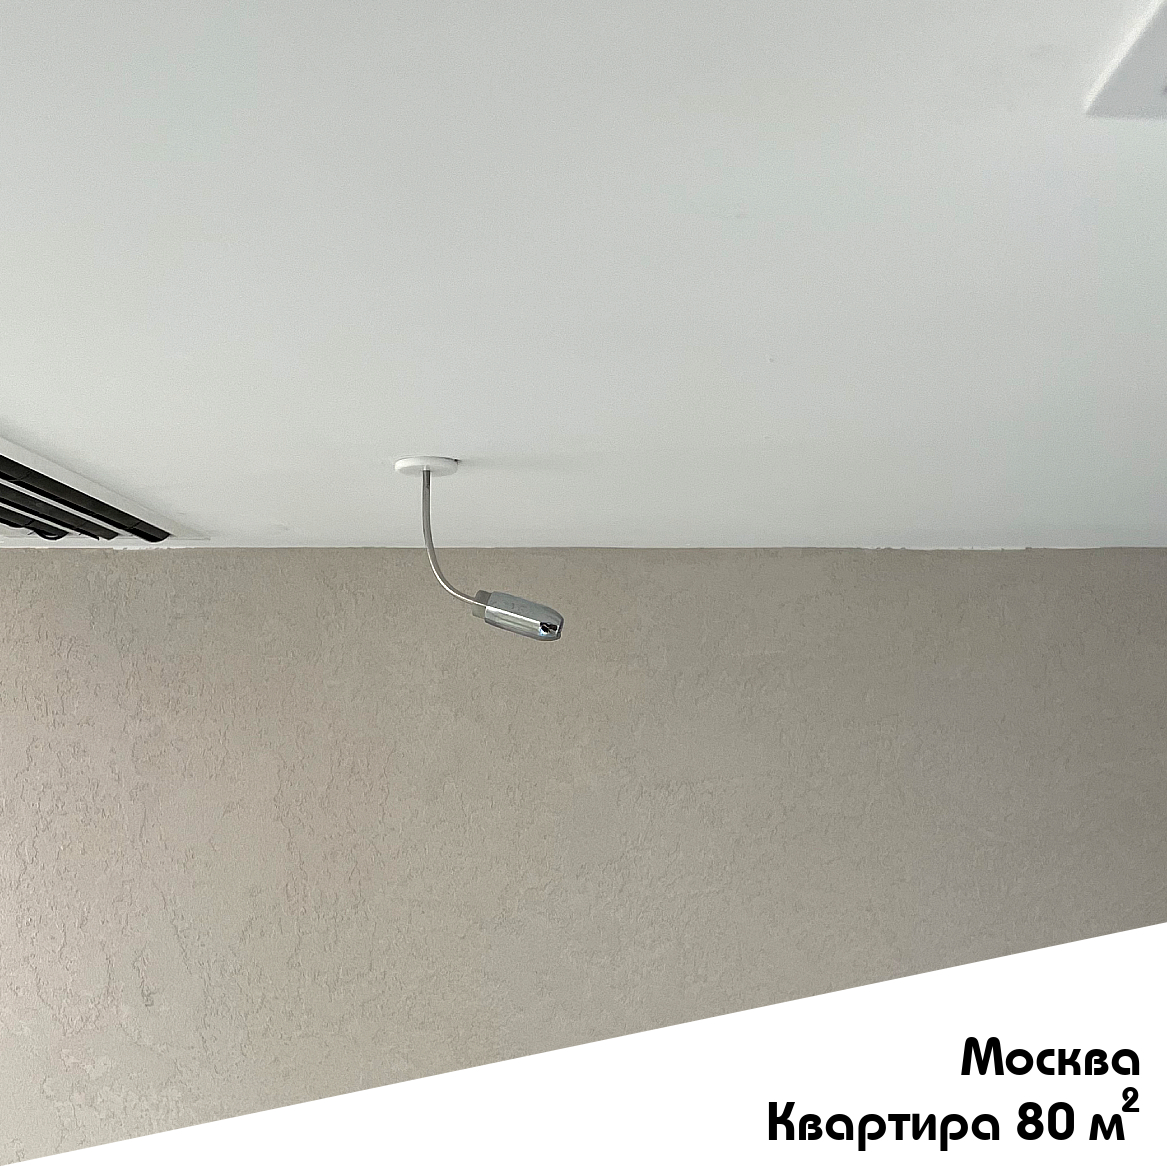 Выполненный объект. Система увлажнения для квартиры 80 м2 в Москве